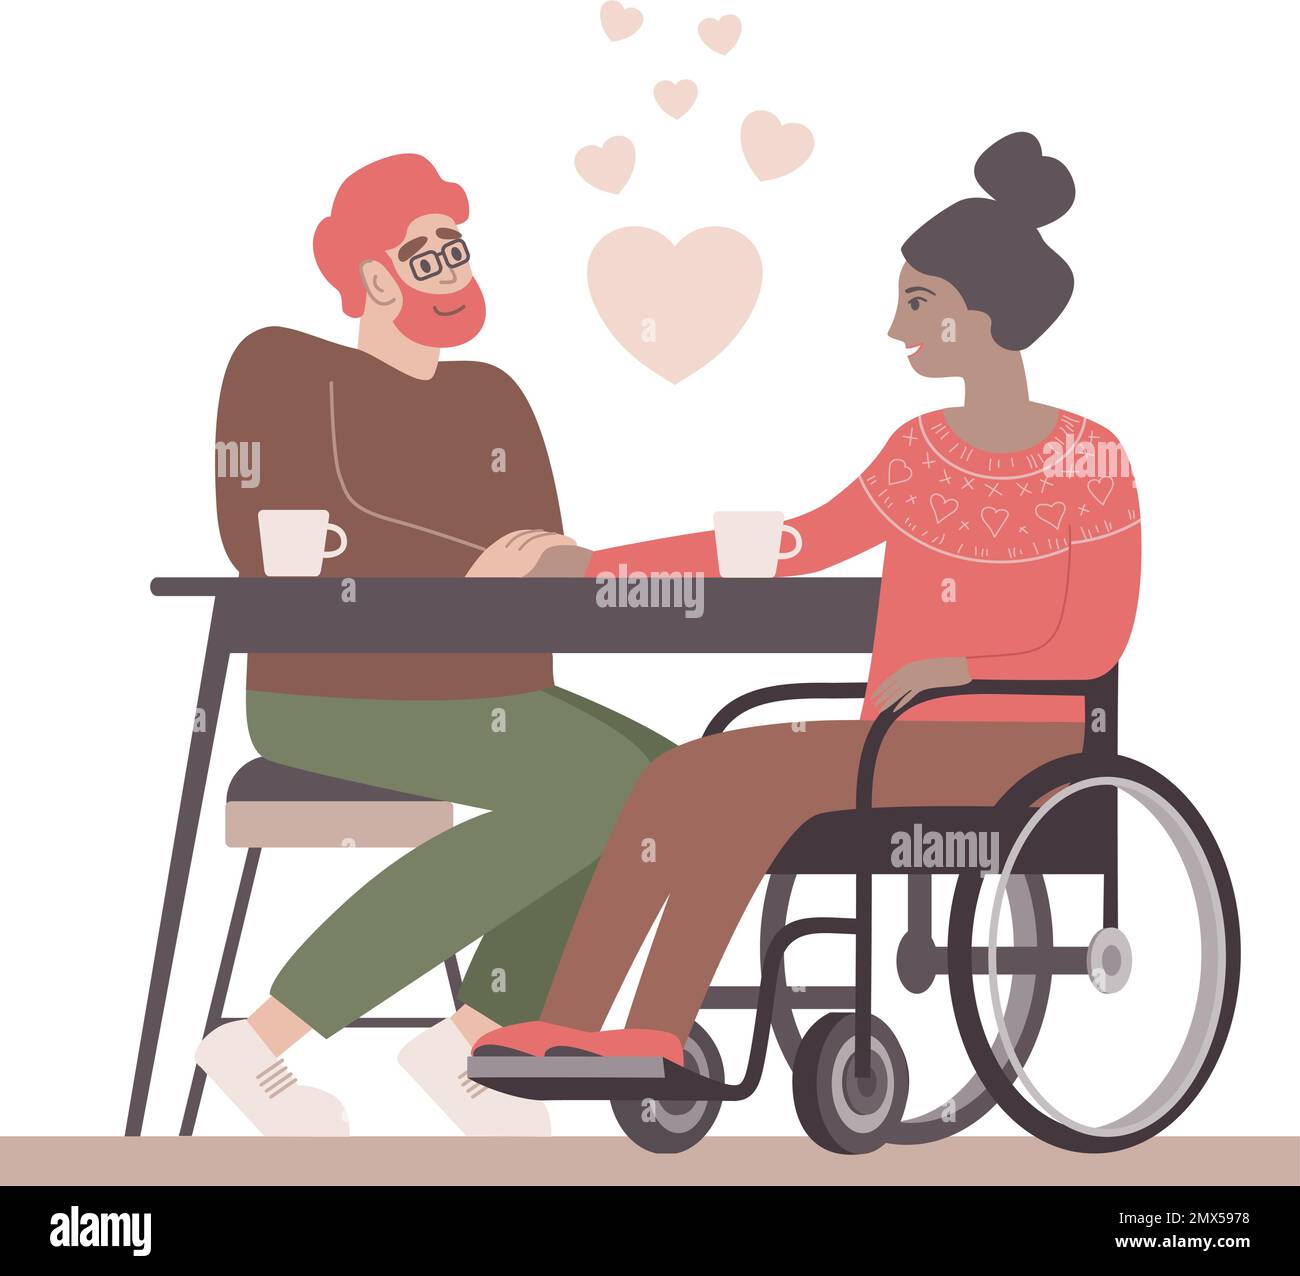 Liebenswertes valentinstagspaar. Mädchen mit Behinderung im Rollstuhl und ihr Freund hat ein Date in einem Café. Beziehung, Liebe, Zärtlichkeit, Pflegekonzept. Stock Vektor